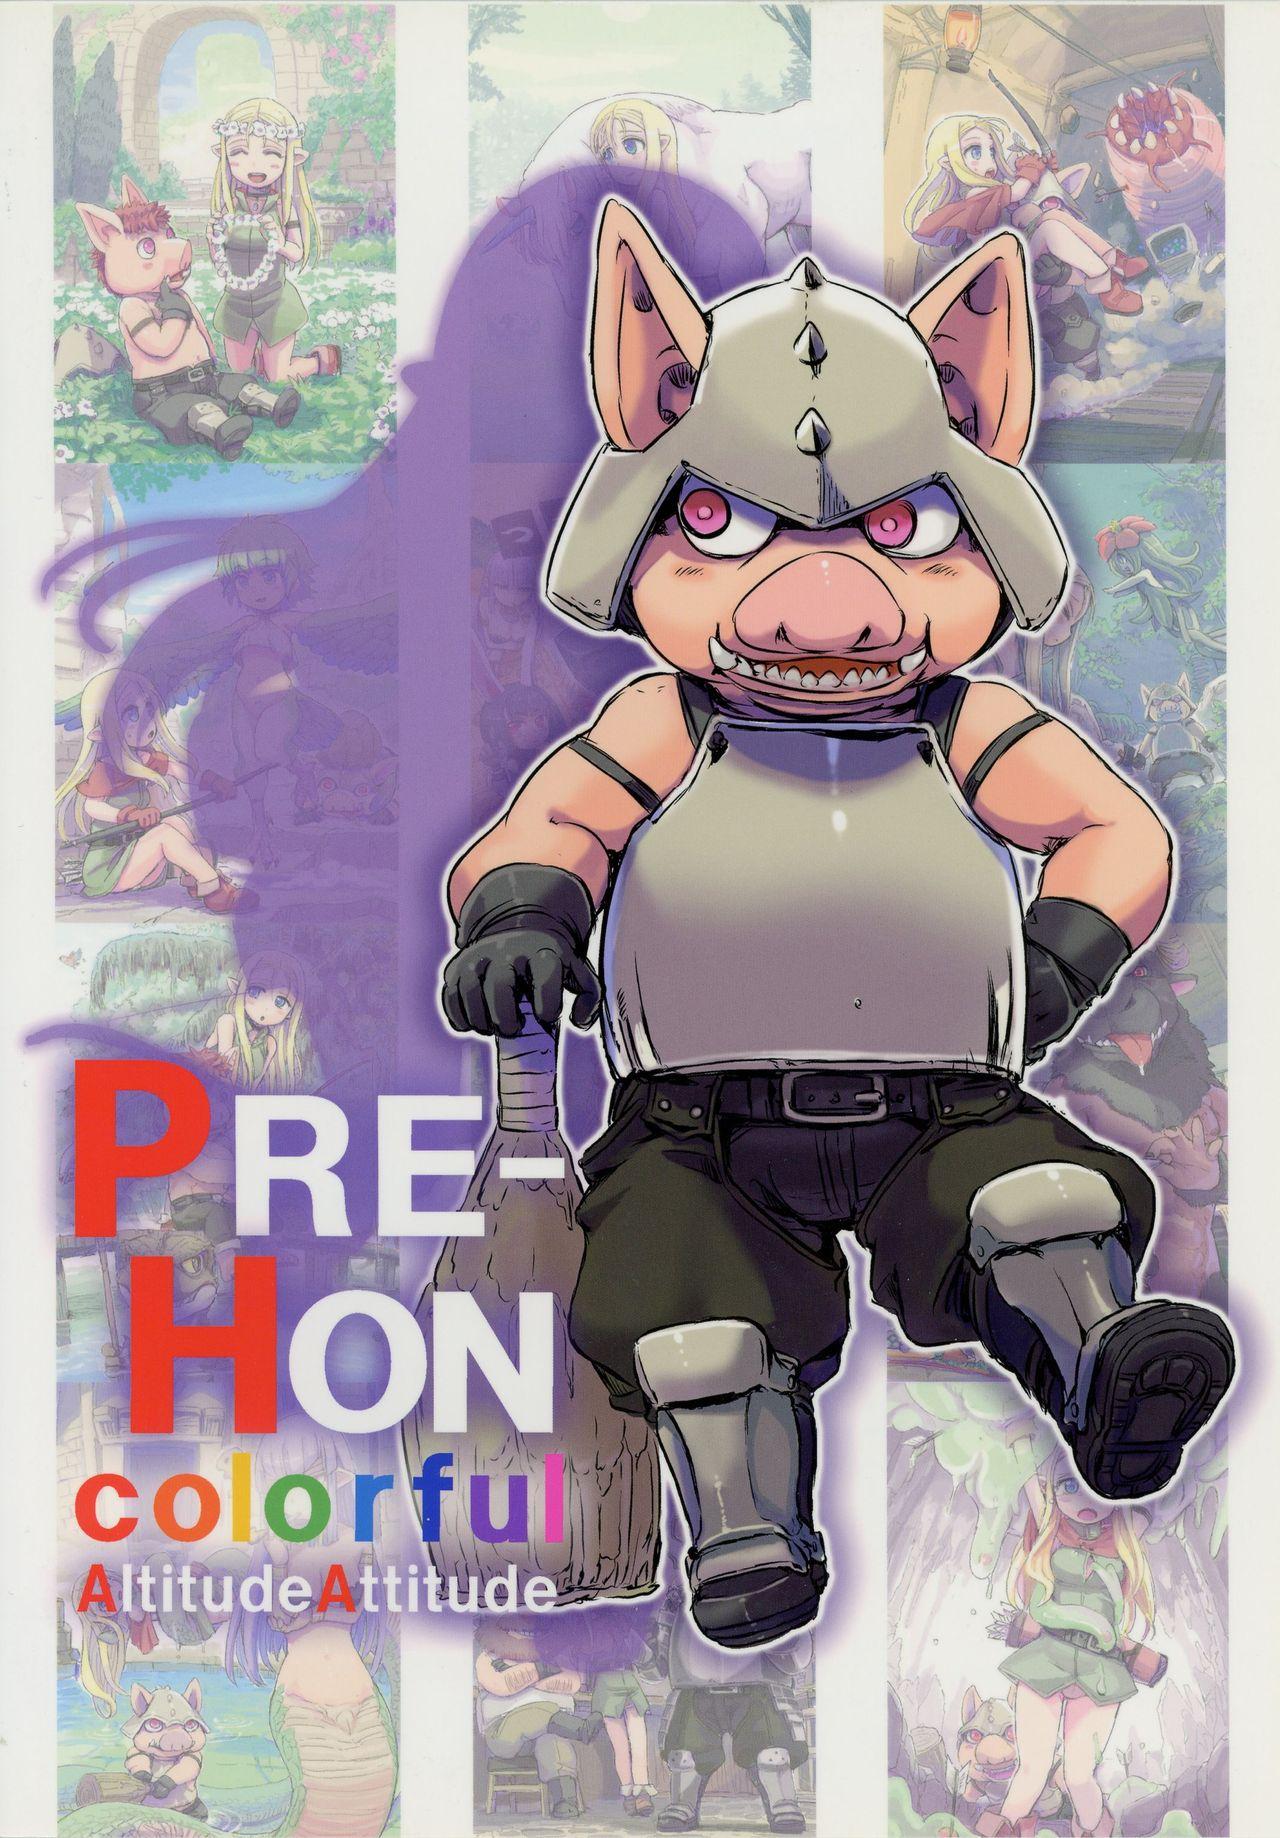 PRE-HON colorful 1